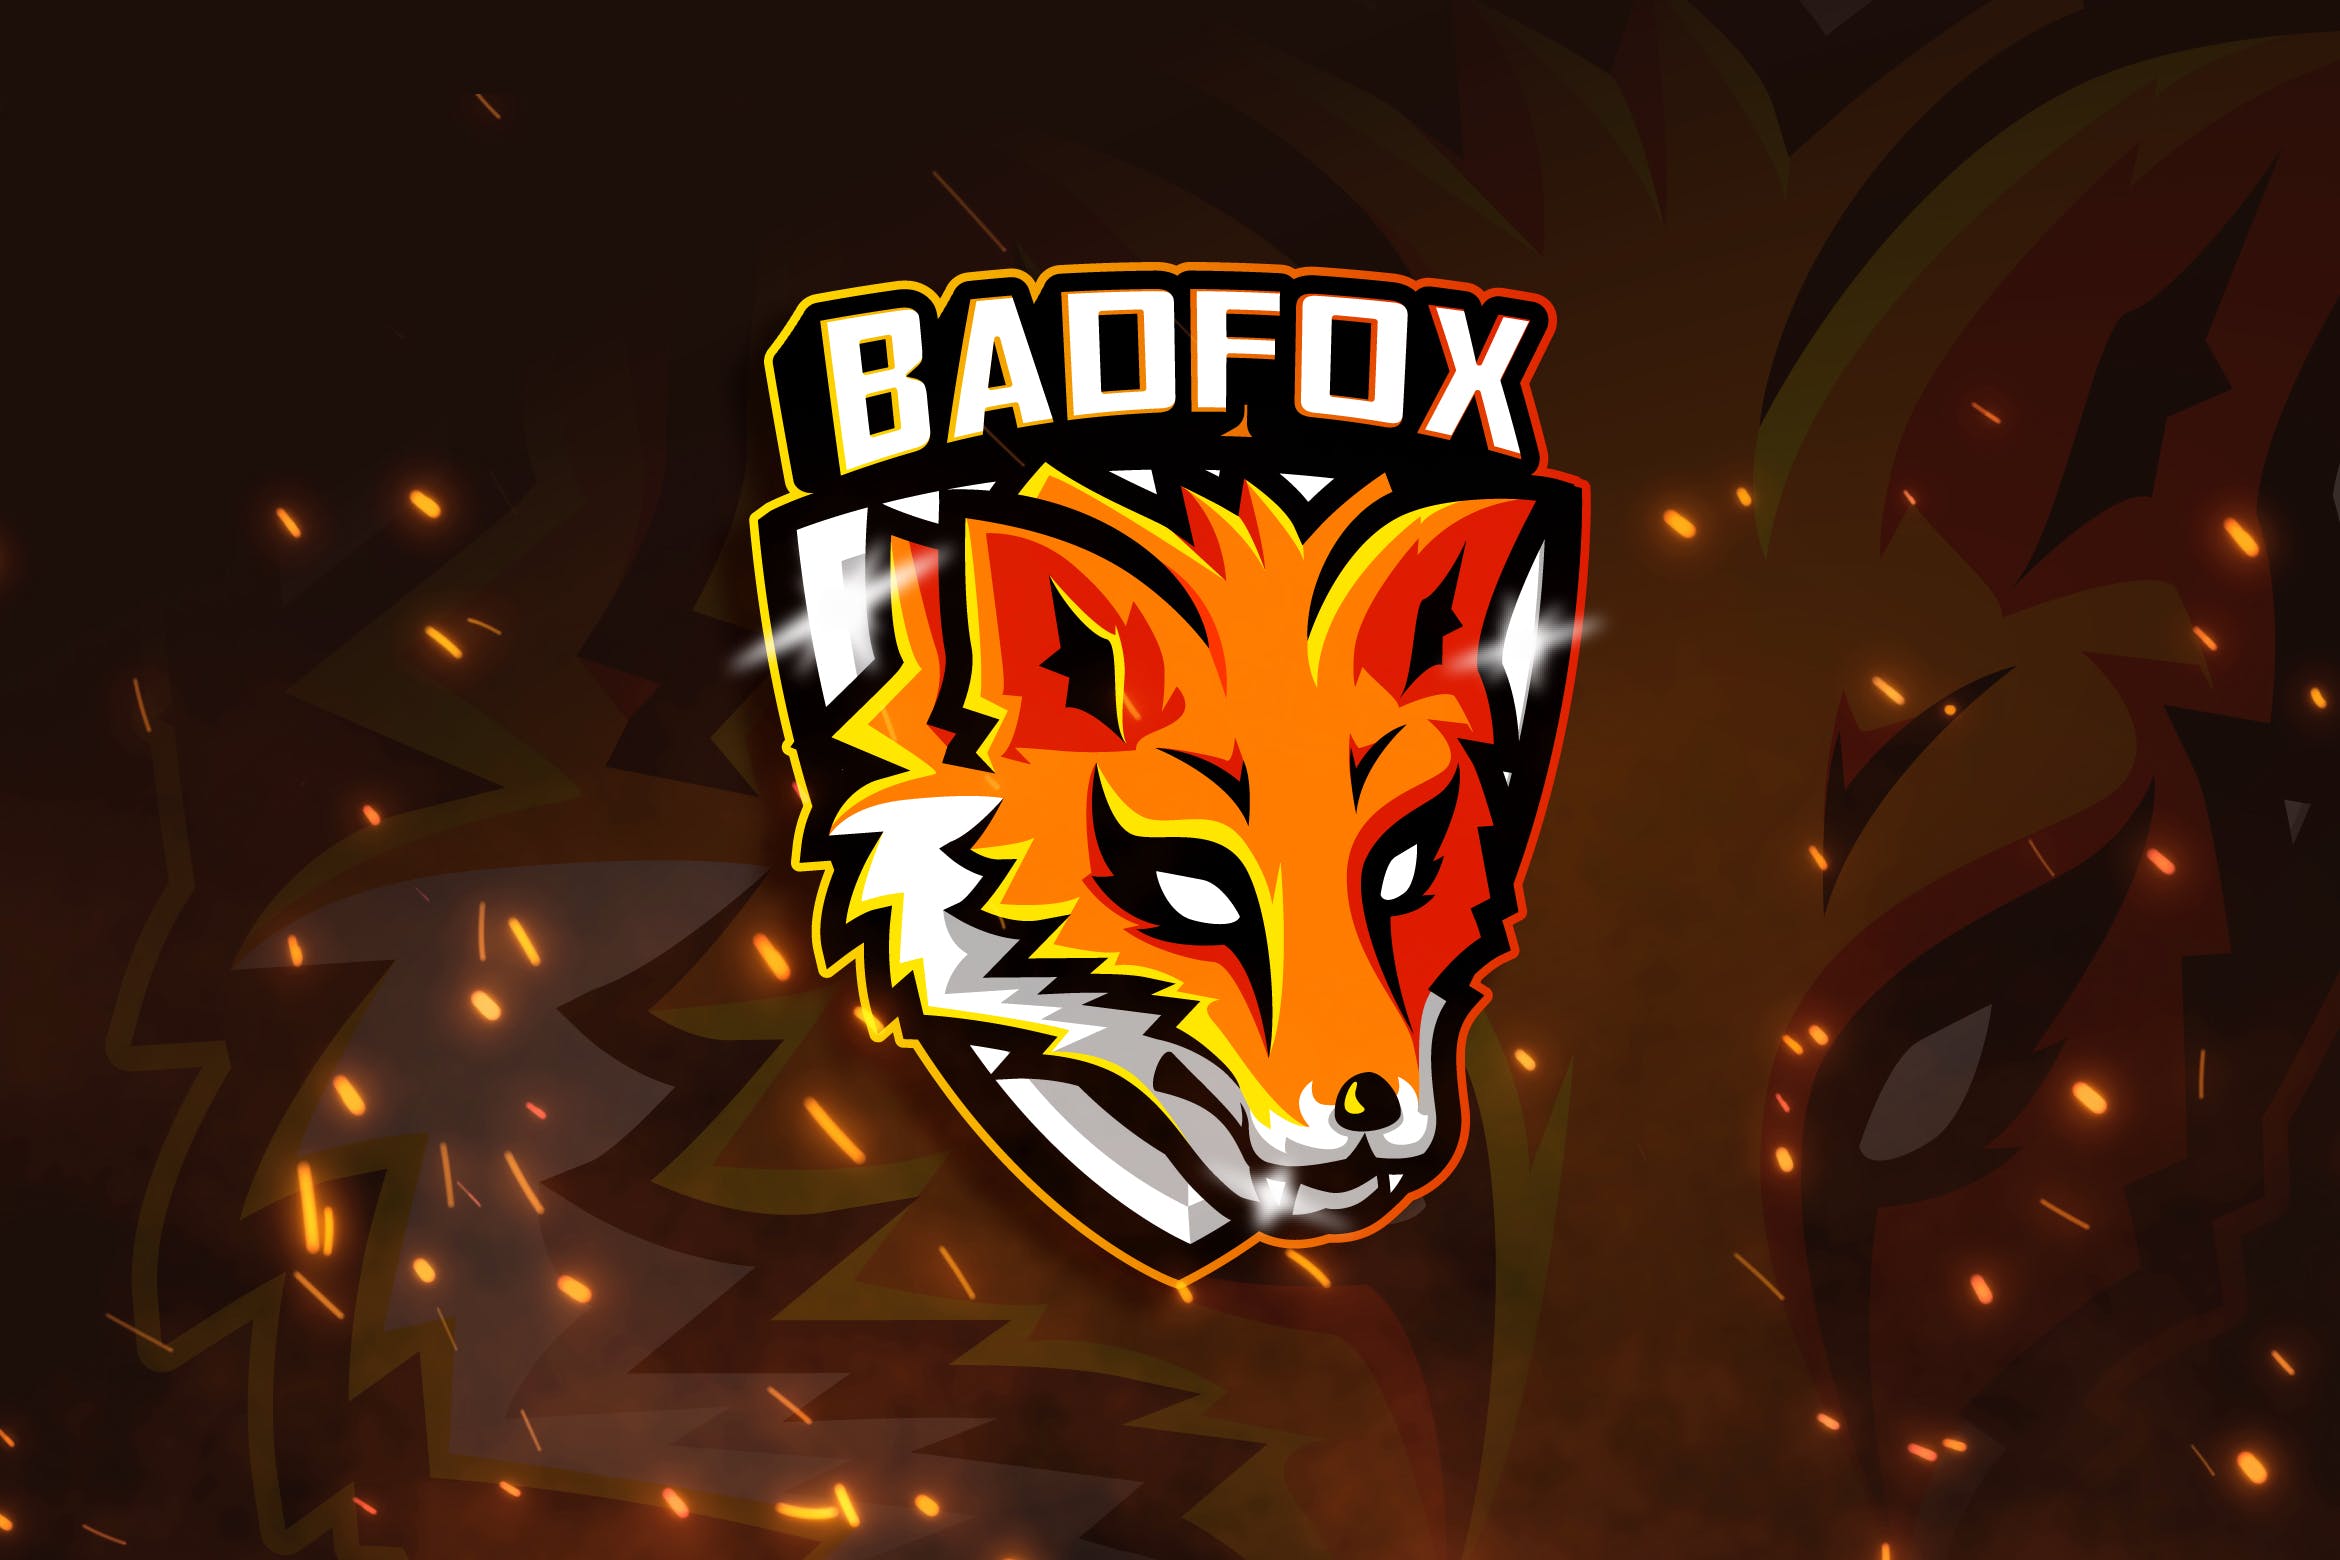 狐狸吉祥物&电子竞技队徽Logo设计模板 BADFOX -Mascot & Esports Logo插图